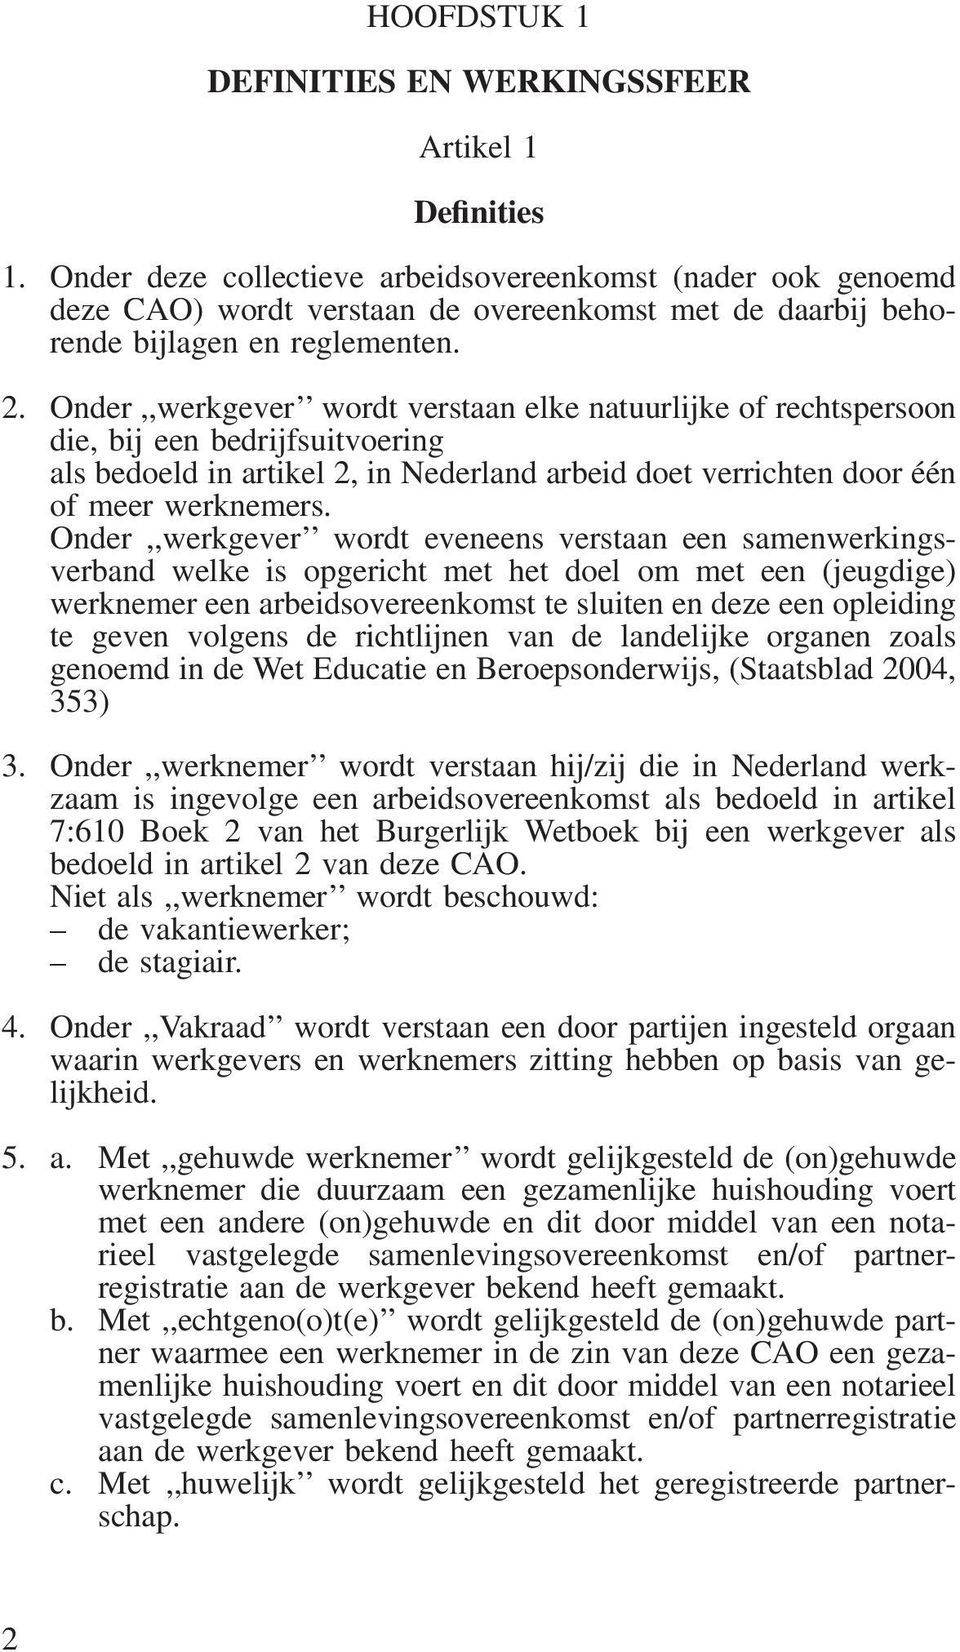 Onder,,werkgever wordt verstaan elke natuurlijke of rechtspersoon die, bij een bedrijfsuitvoering als bedoeld in artikel 2, in Nederland arbeid doet verrichten door één of meer werknemers.